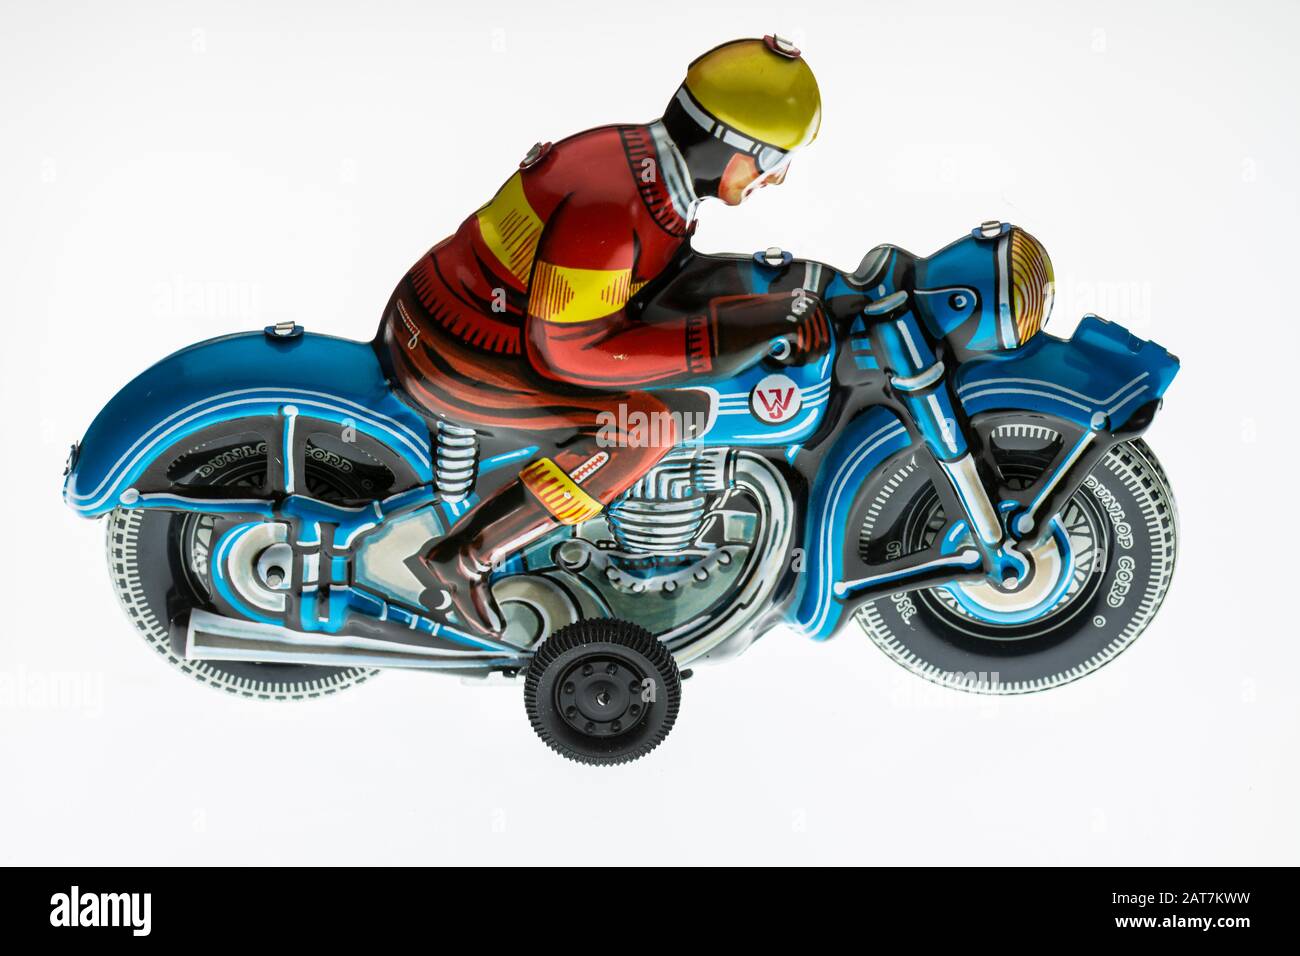 Jouets nostalgiques en étain, motocycliste des années 1950, fond blanc, Allemagne Banque D'Images